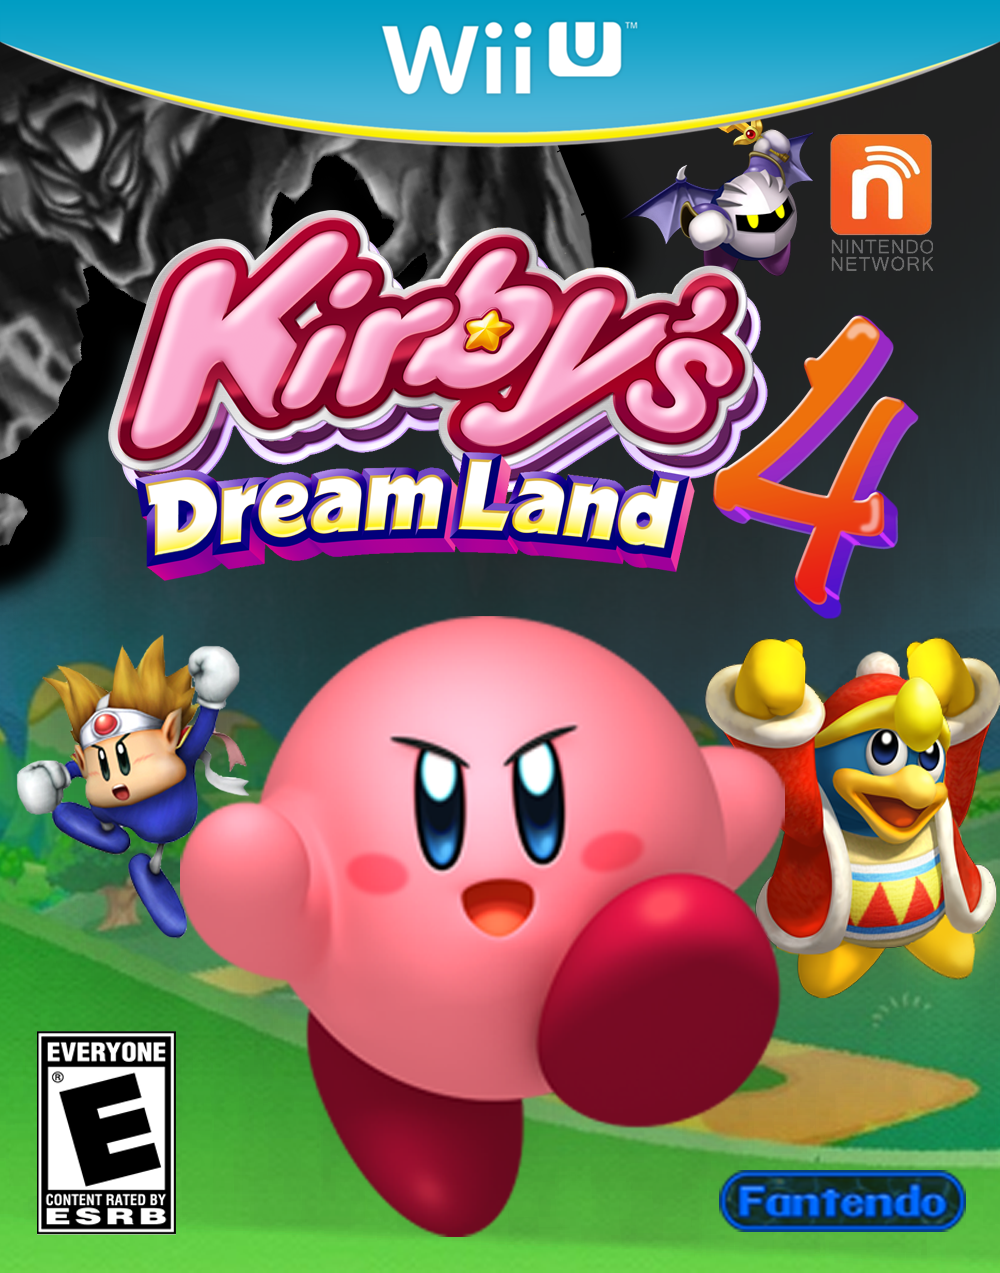 Tochi boom galop Vestiging Kirby's Dream Land 4 | Fantendo - Game Ideas & More | Fandom